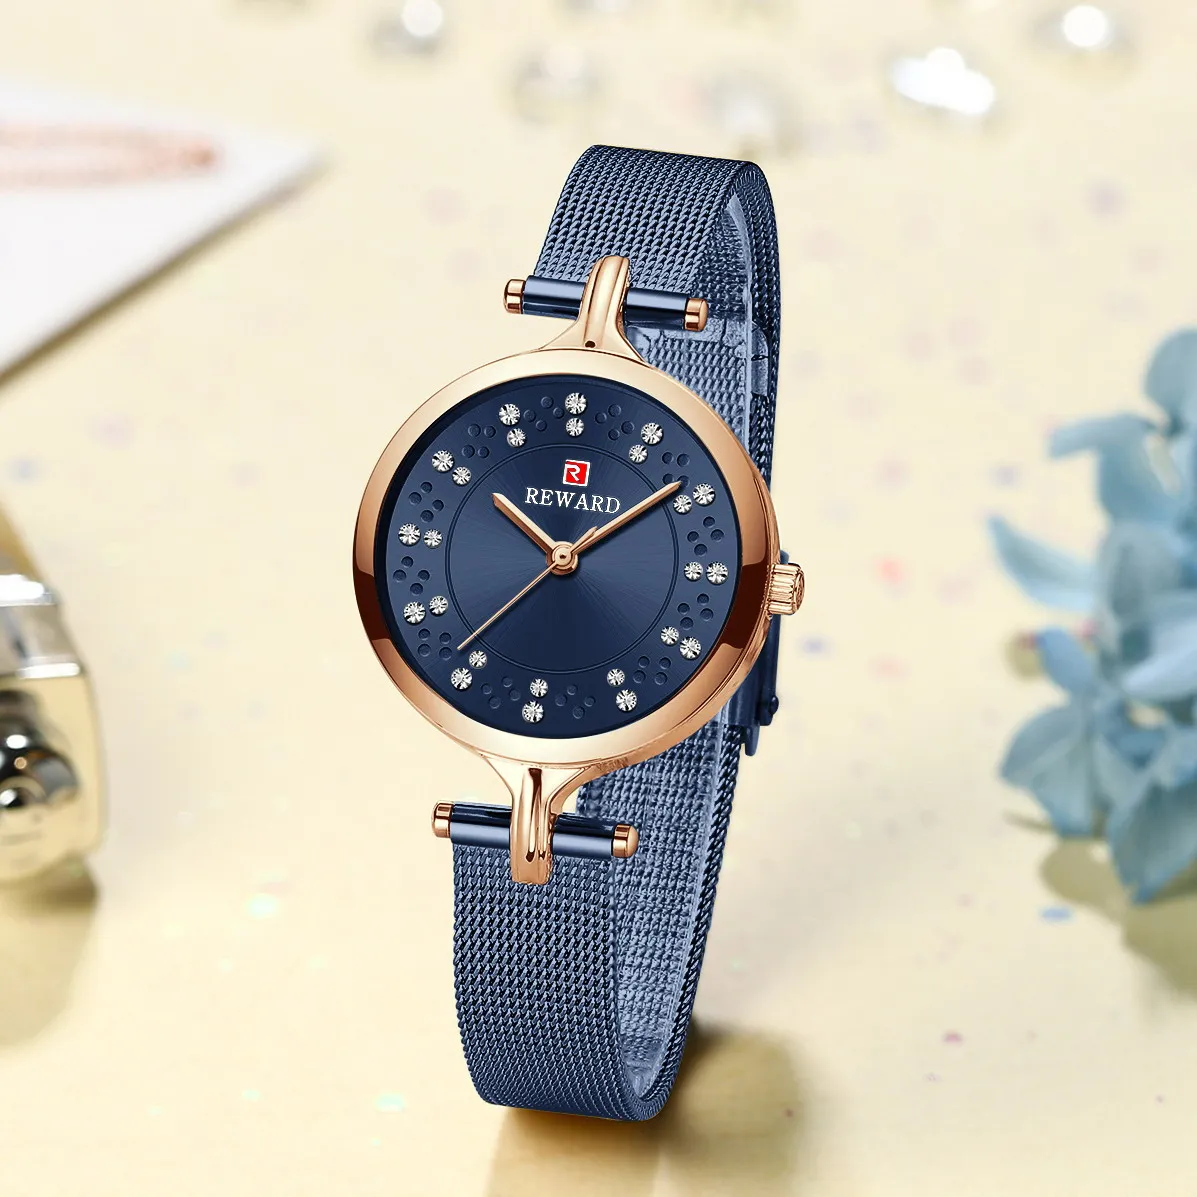 Đồng hồ nữ chính hãng Tháng 8 2023 -SDN16 đẹp cao cấp, giá tốt nhất, tại malanaz shopping và Shopviets.com, giao hàng nhanh. Mua Đồng hồ đeo tay Nữ Giá Tốt